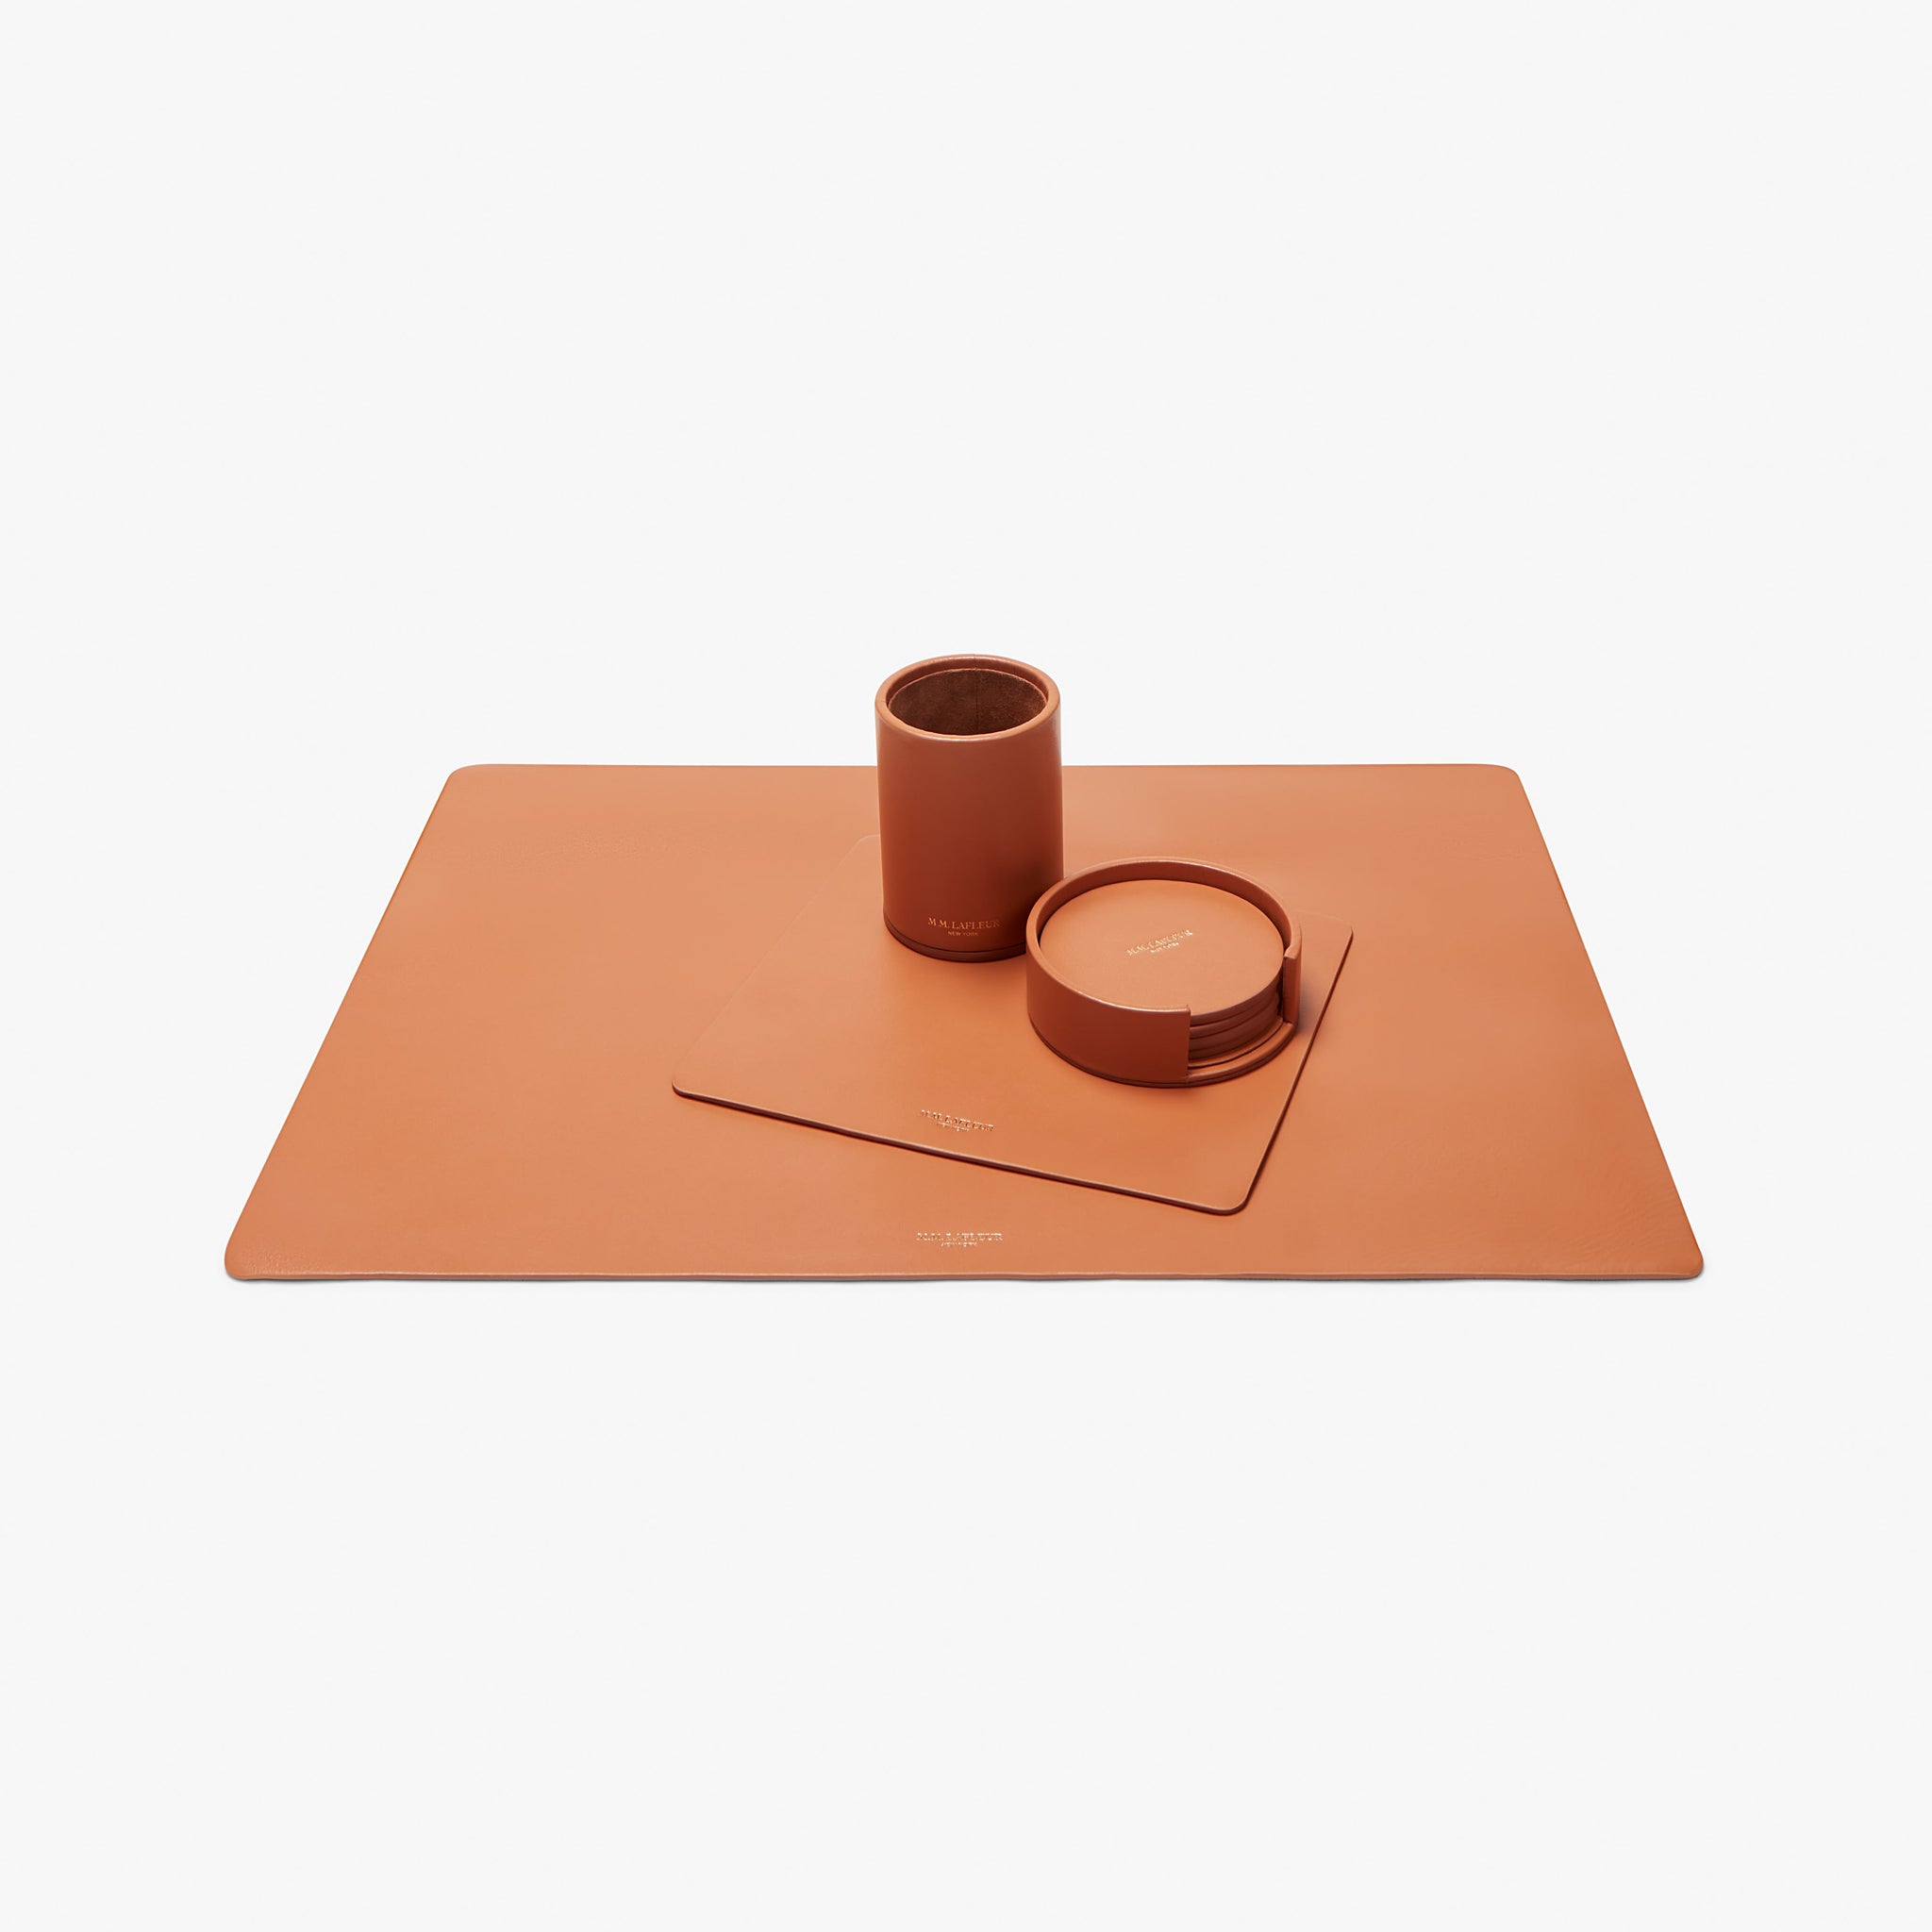 Desk blotter and leather desk set in caramel. 